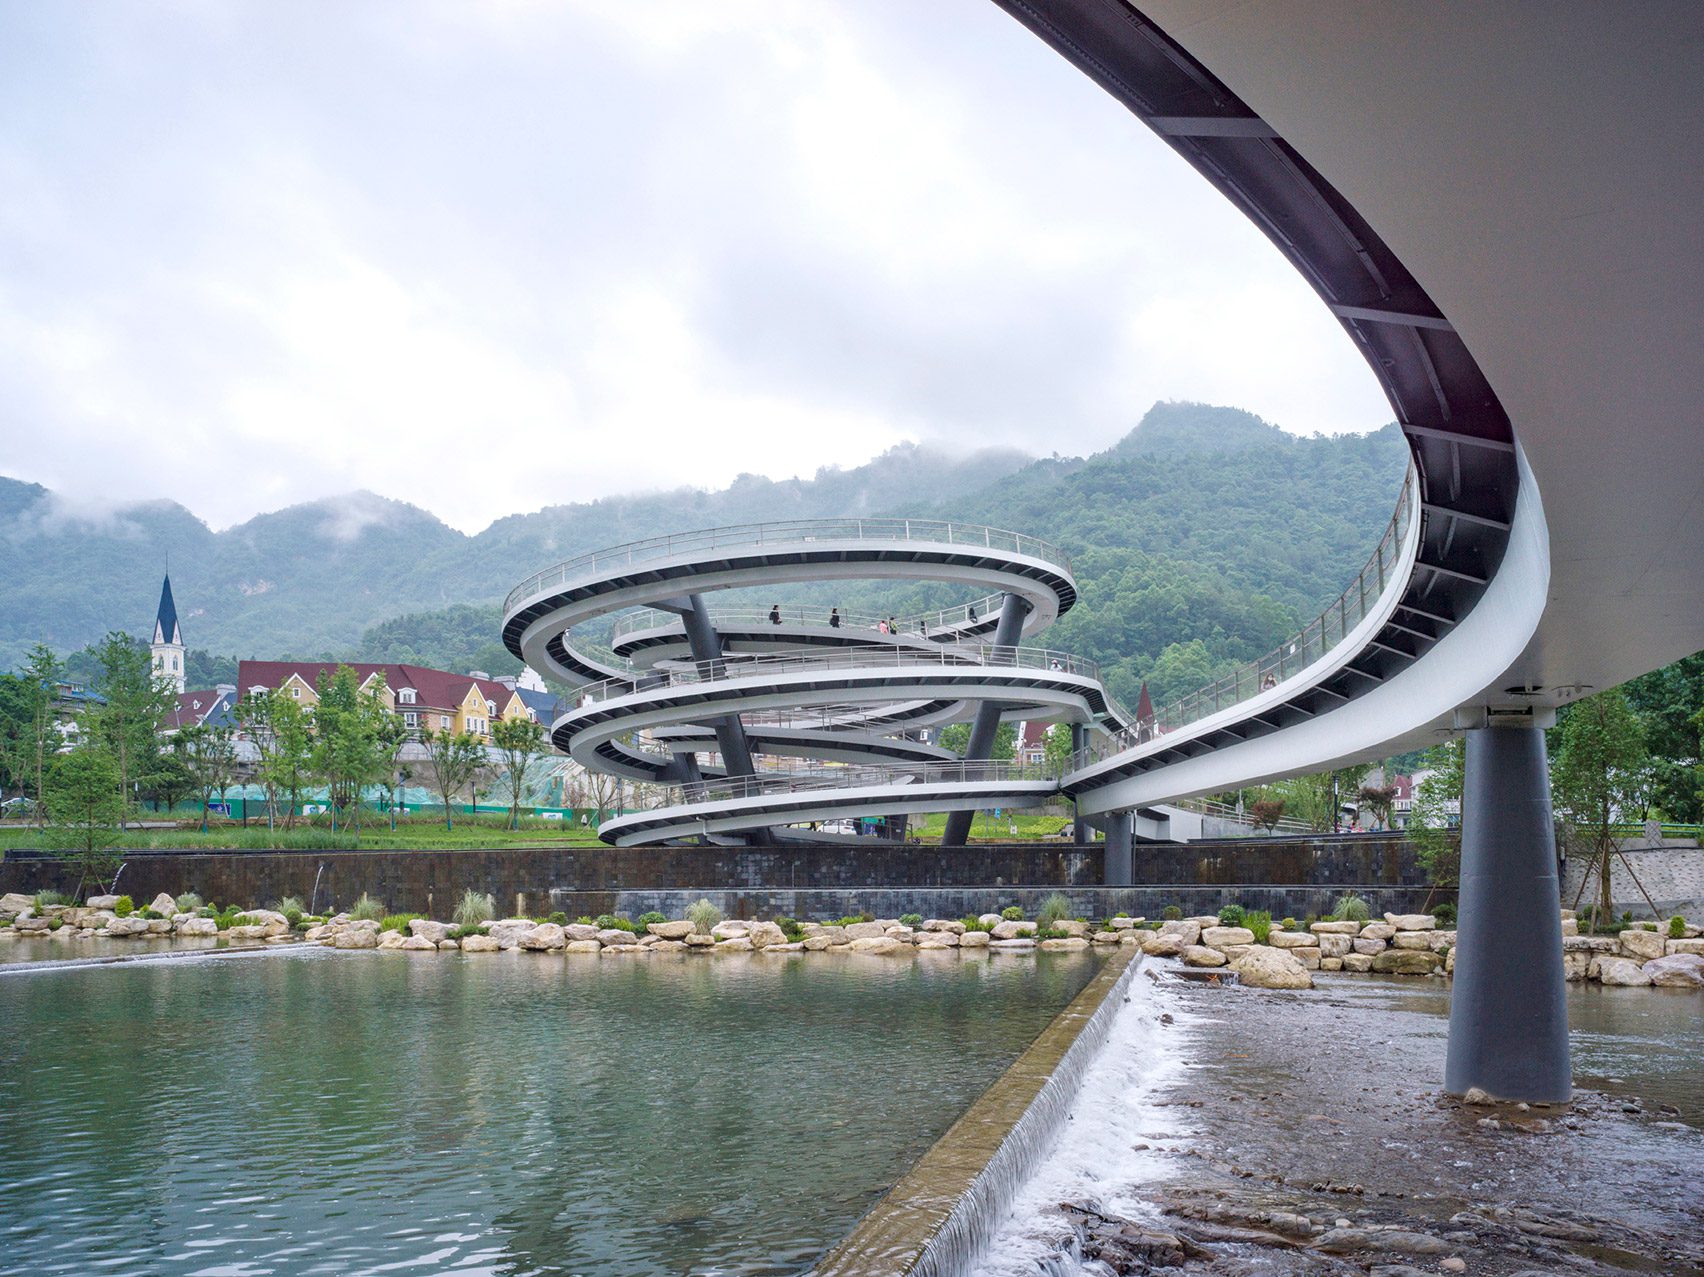 Spiral of G Clef Bridge by ZZHK